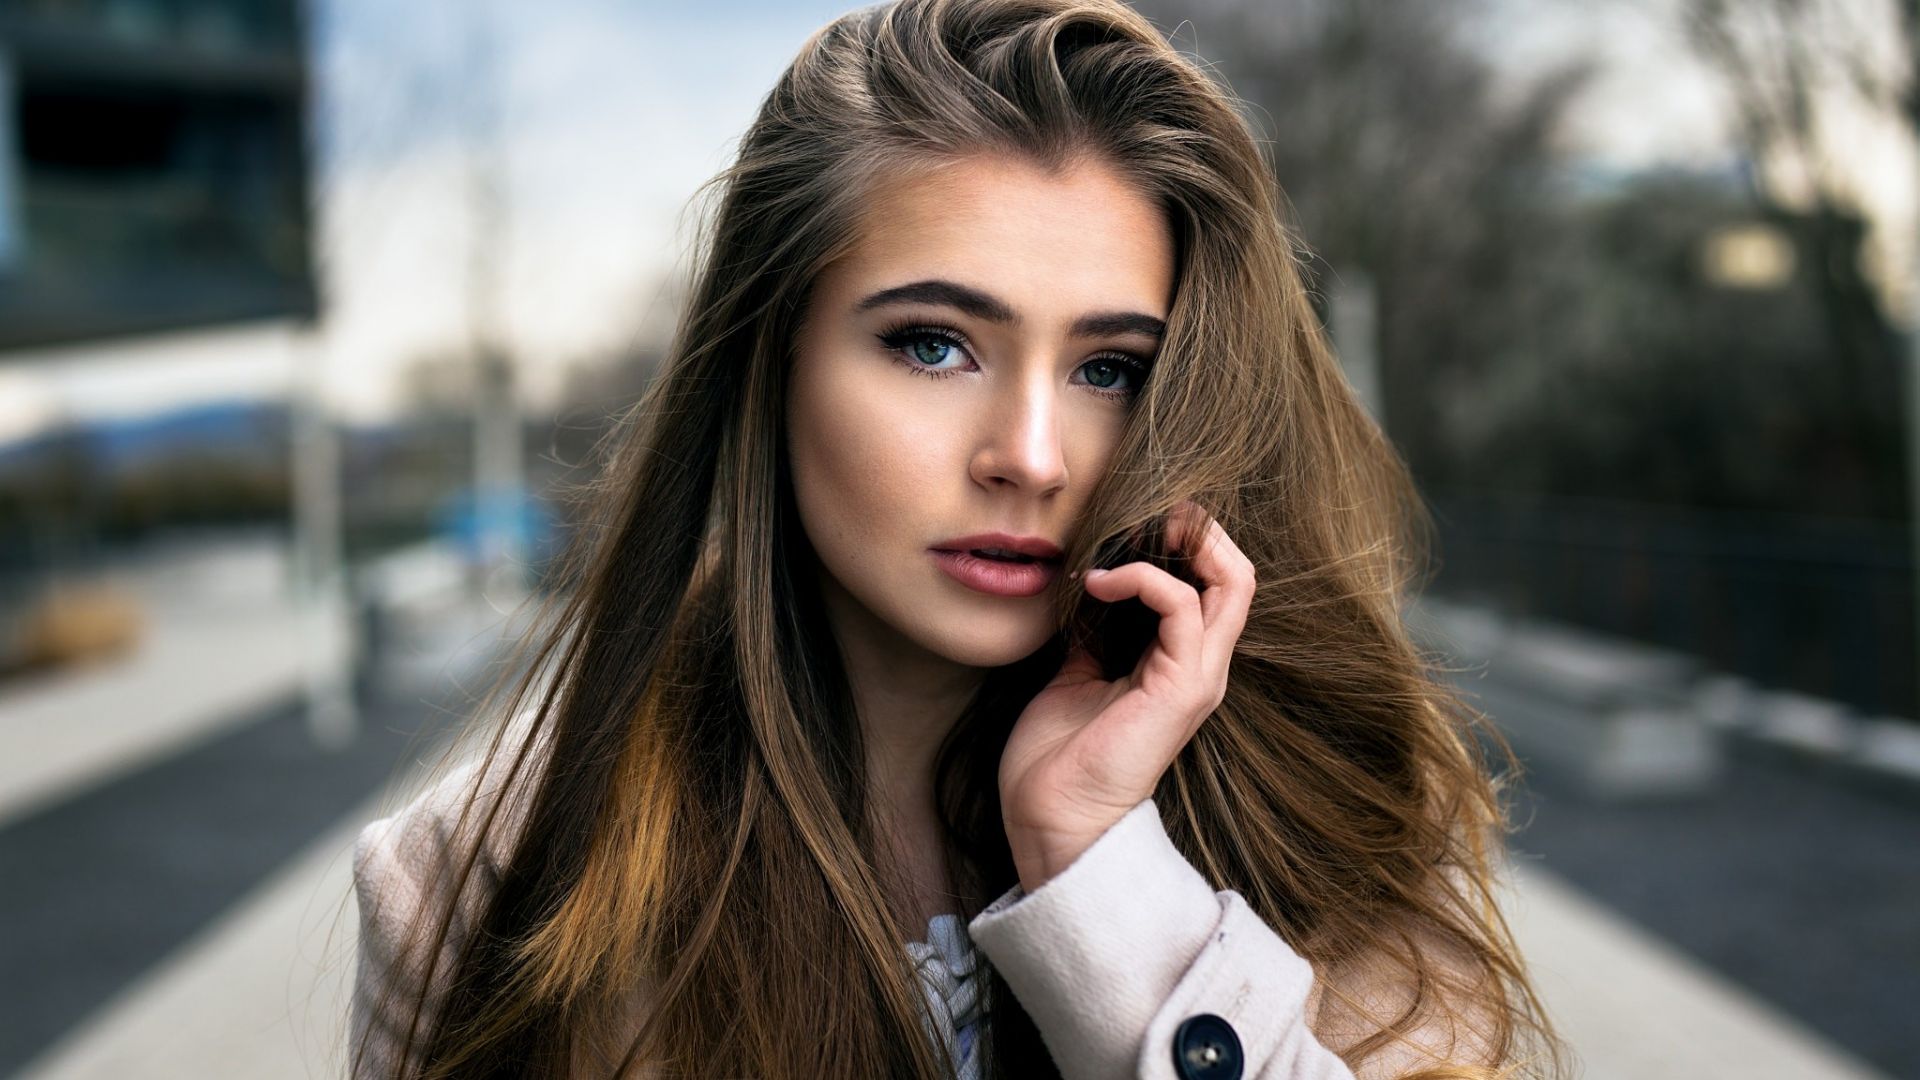 Wallpaper Outdoor, model, girl, hair on face